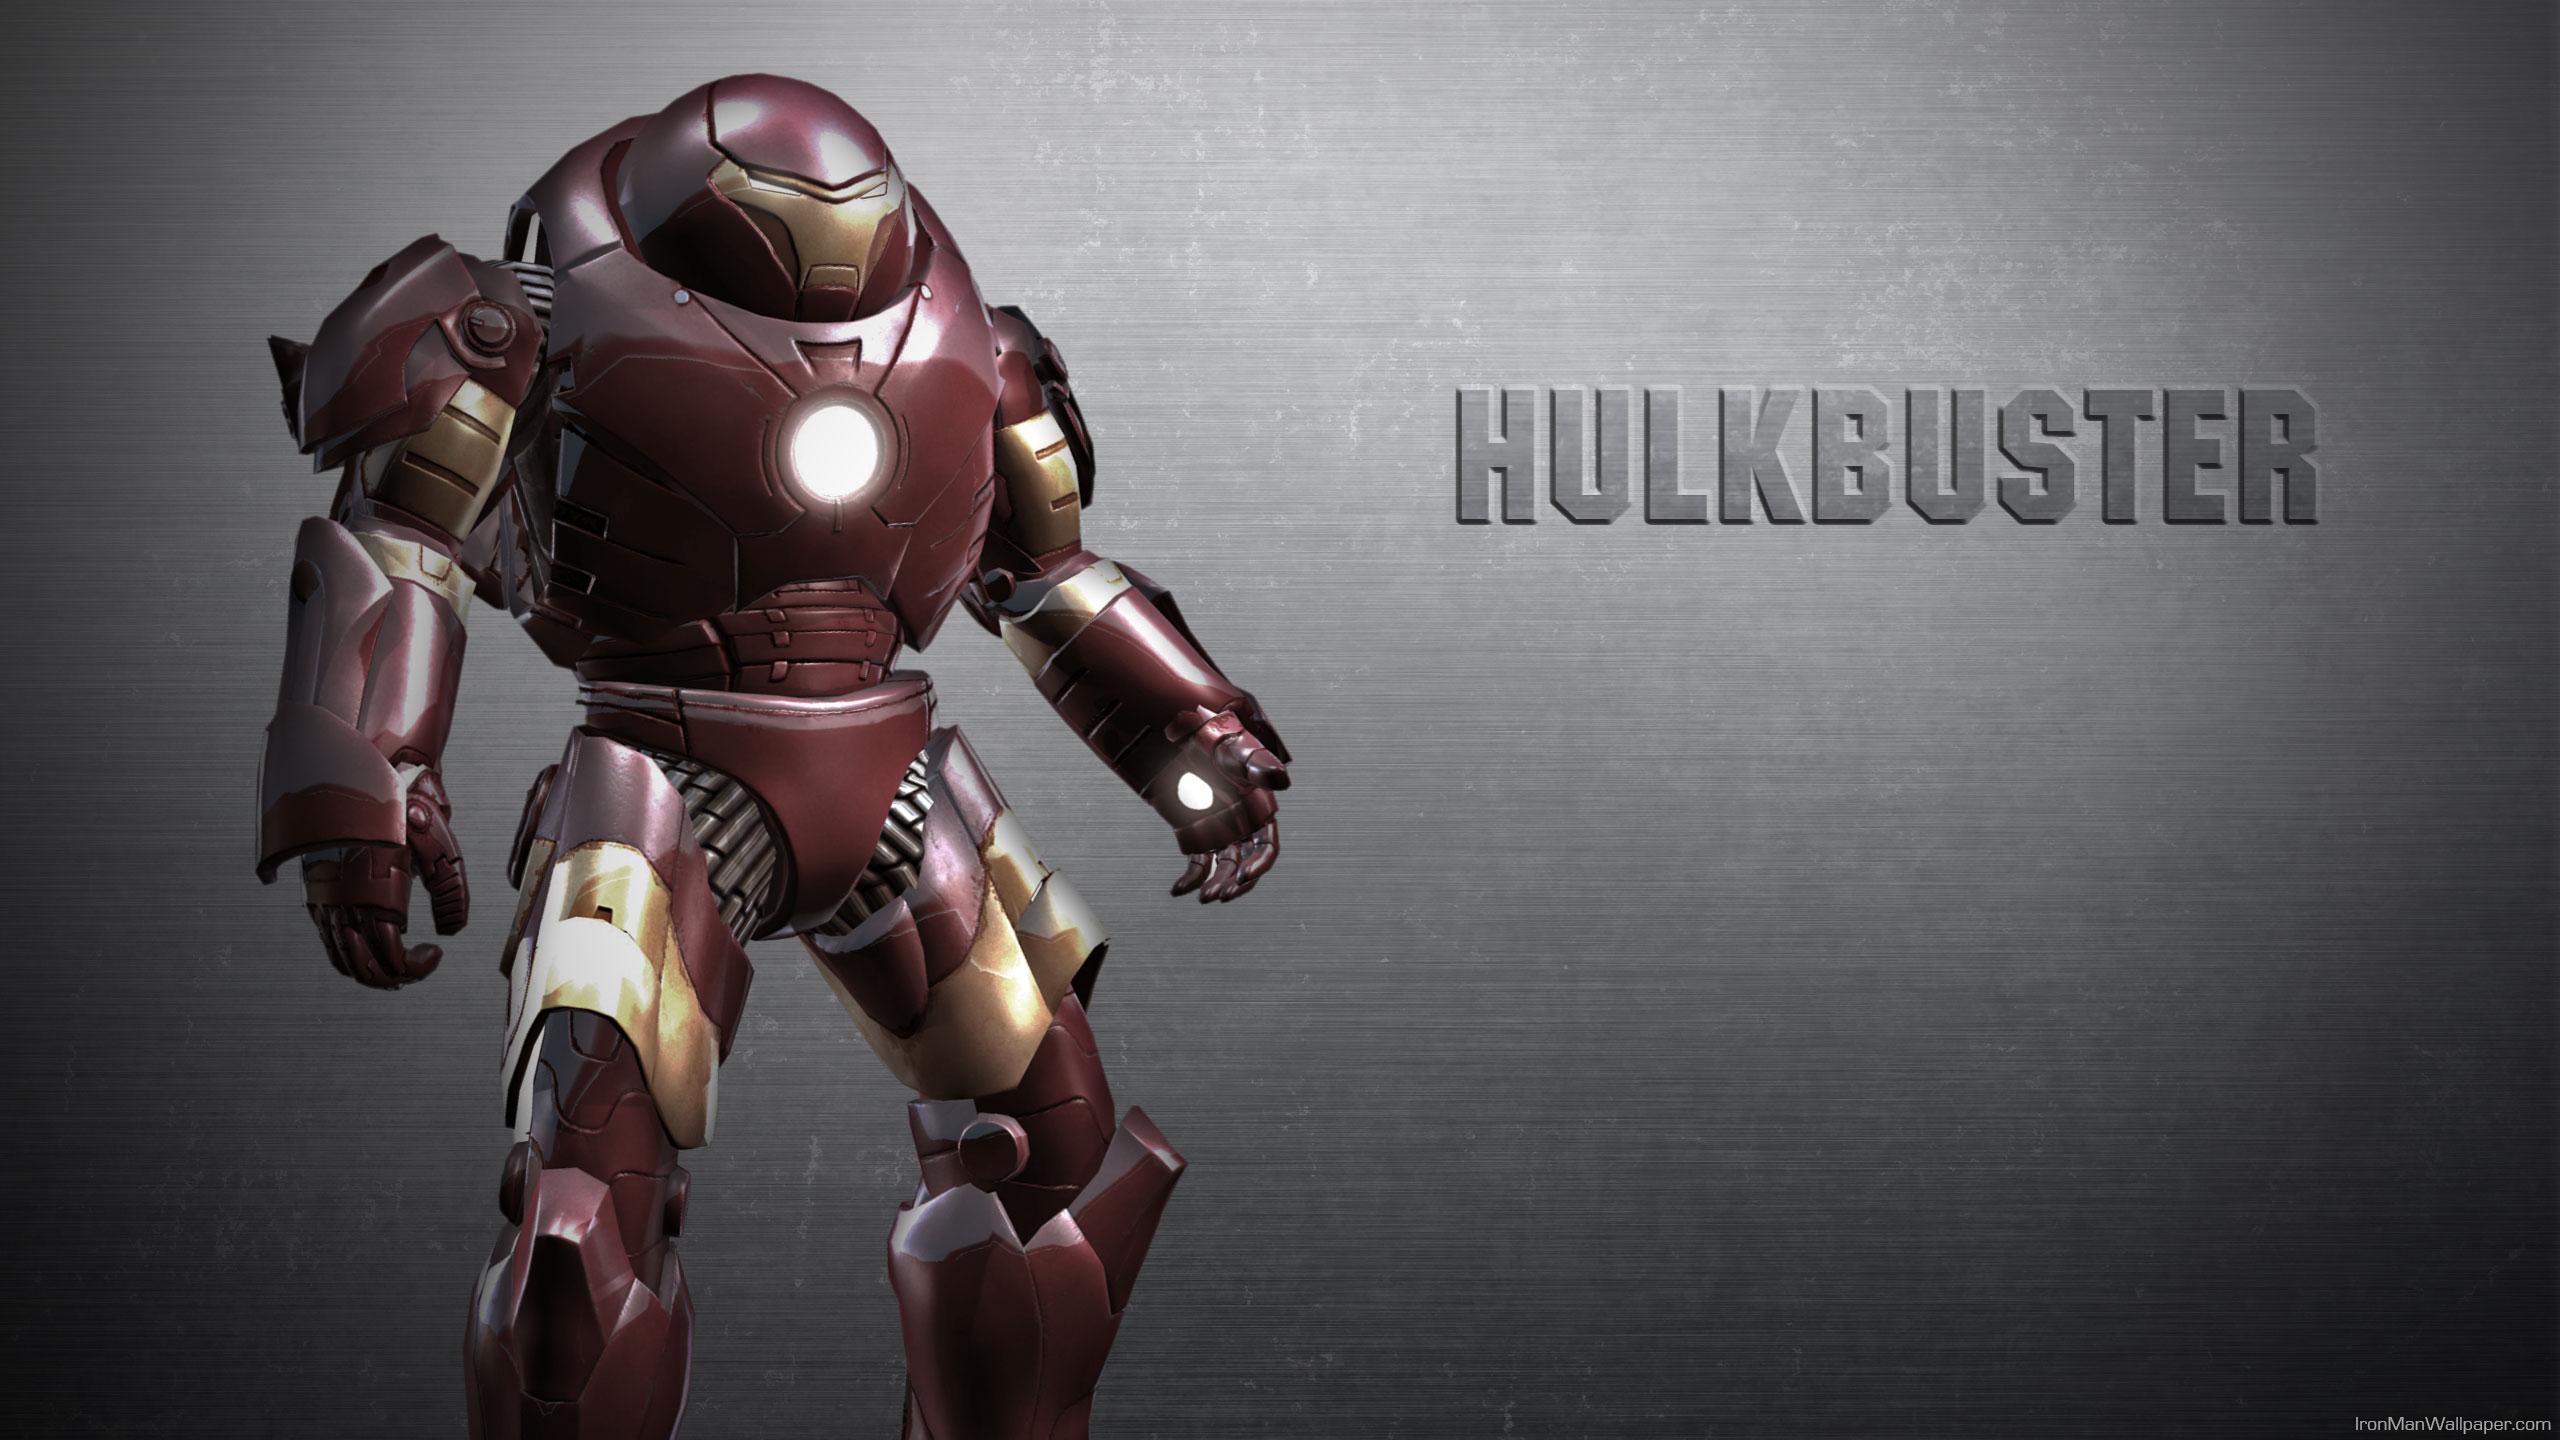 Iron Man Wallpaper Hulkbuster 2560x1440 (436.19 KB)